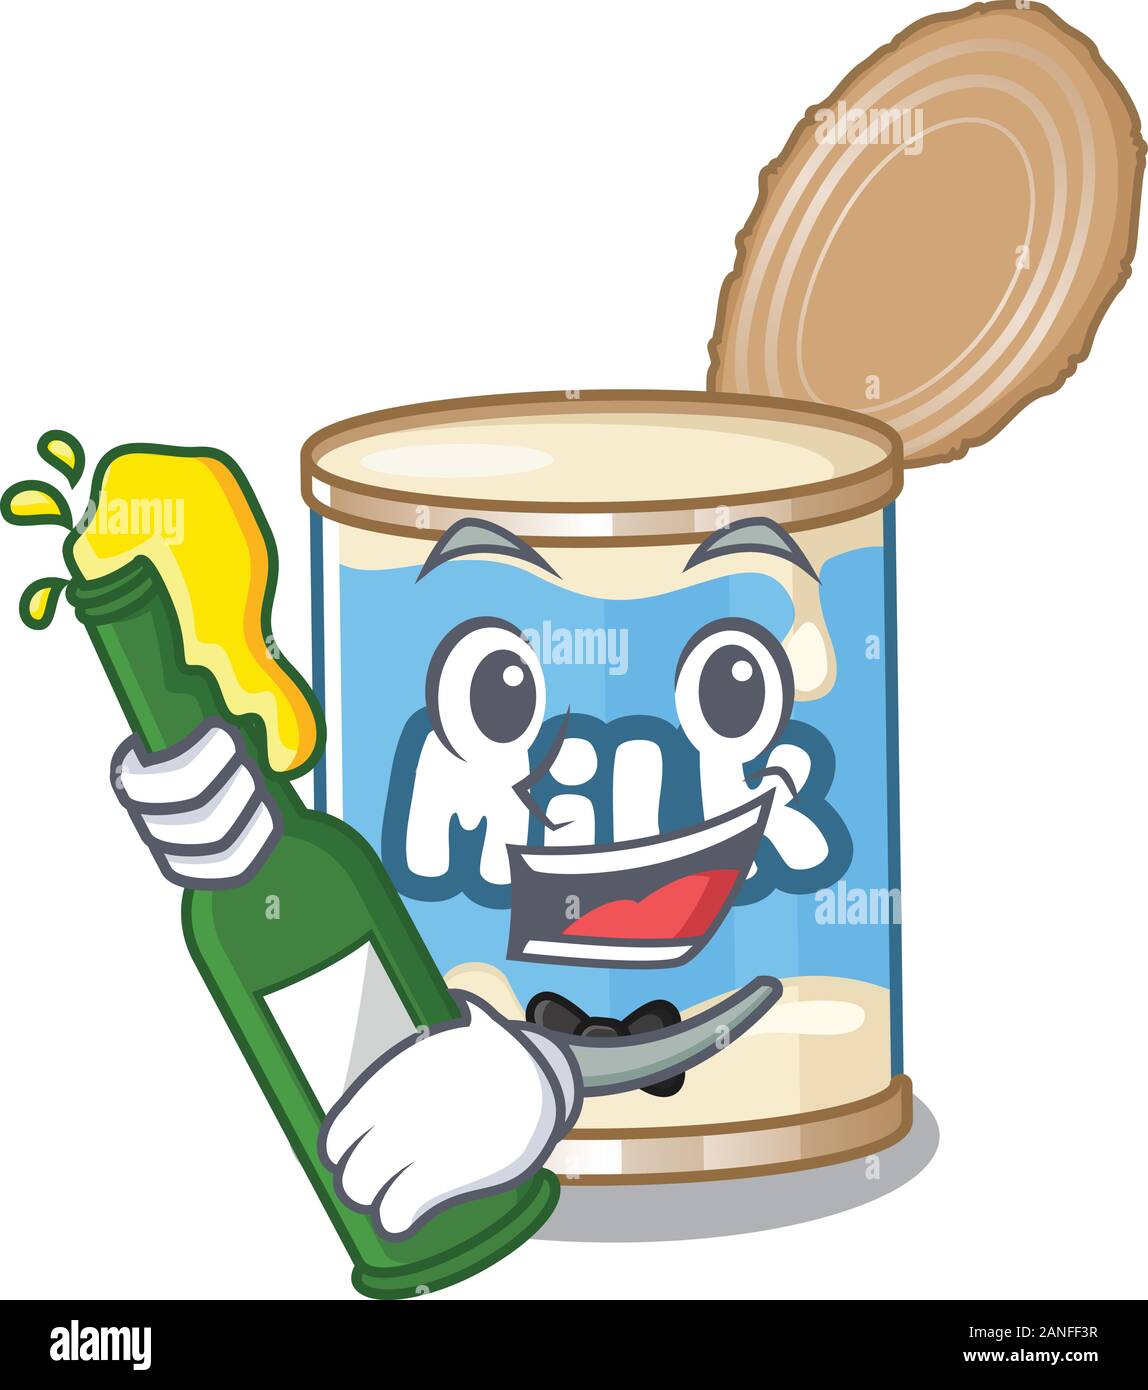 mascot cartoon design of condensed milk with bottle of beer Stock Vector